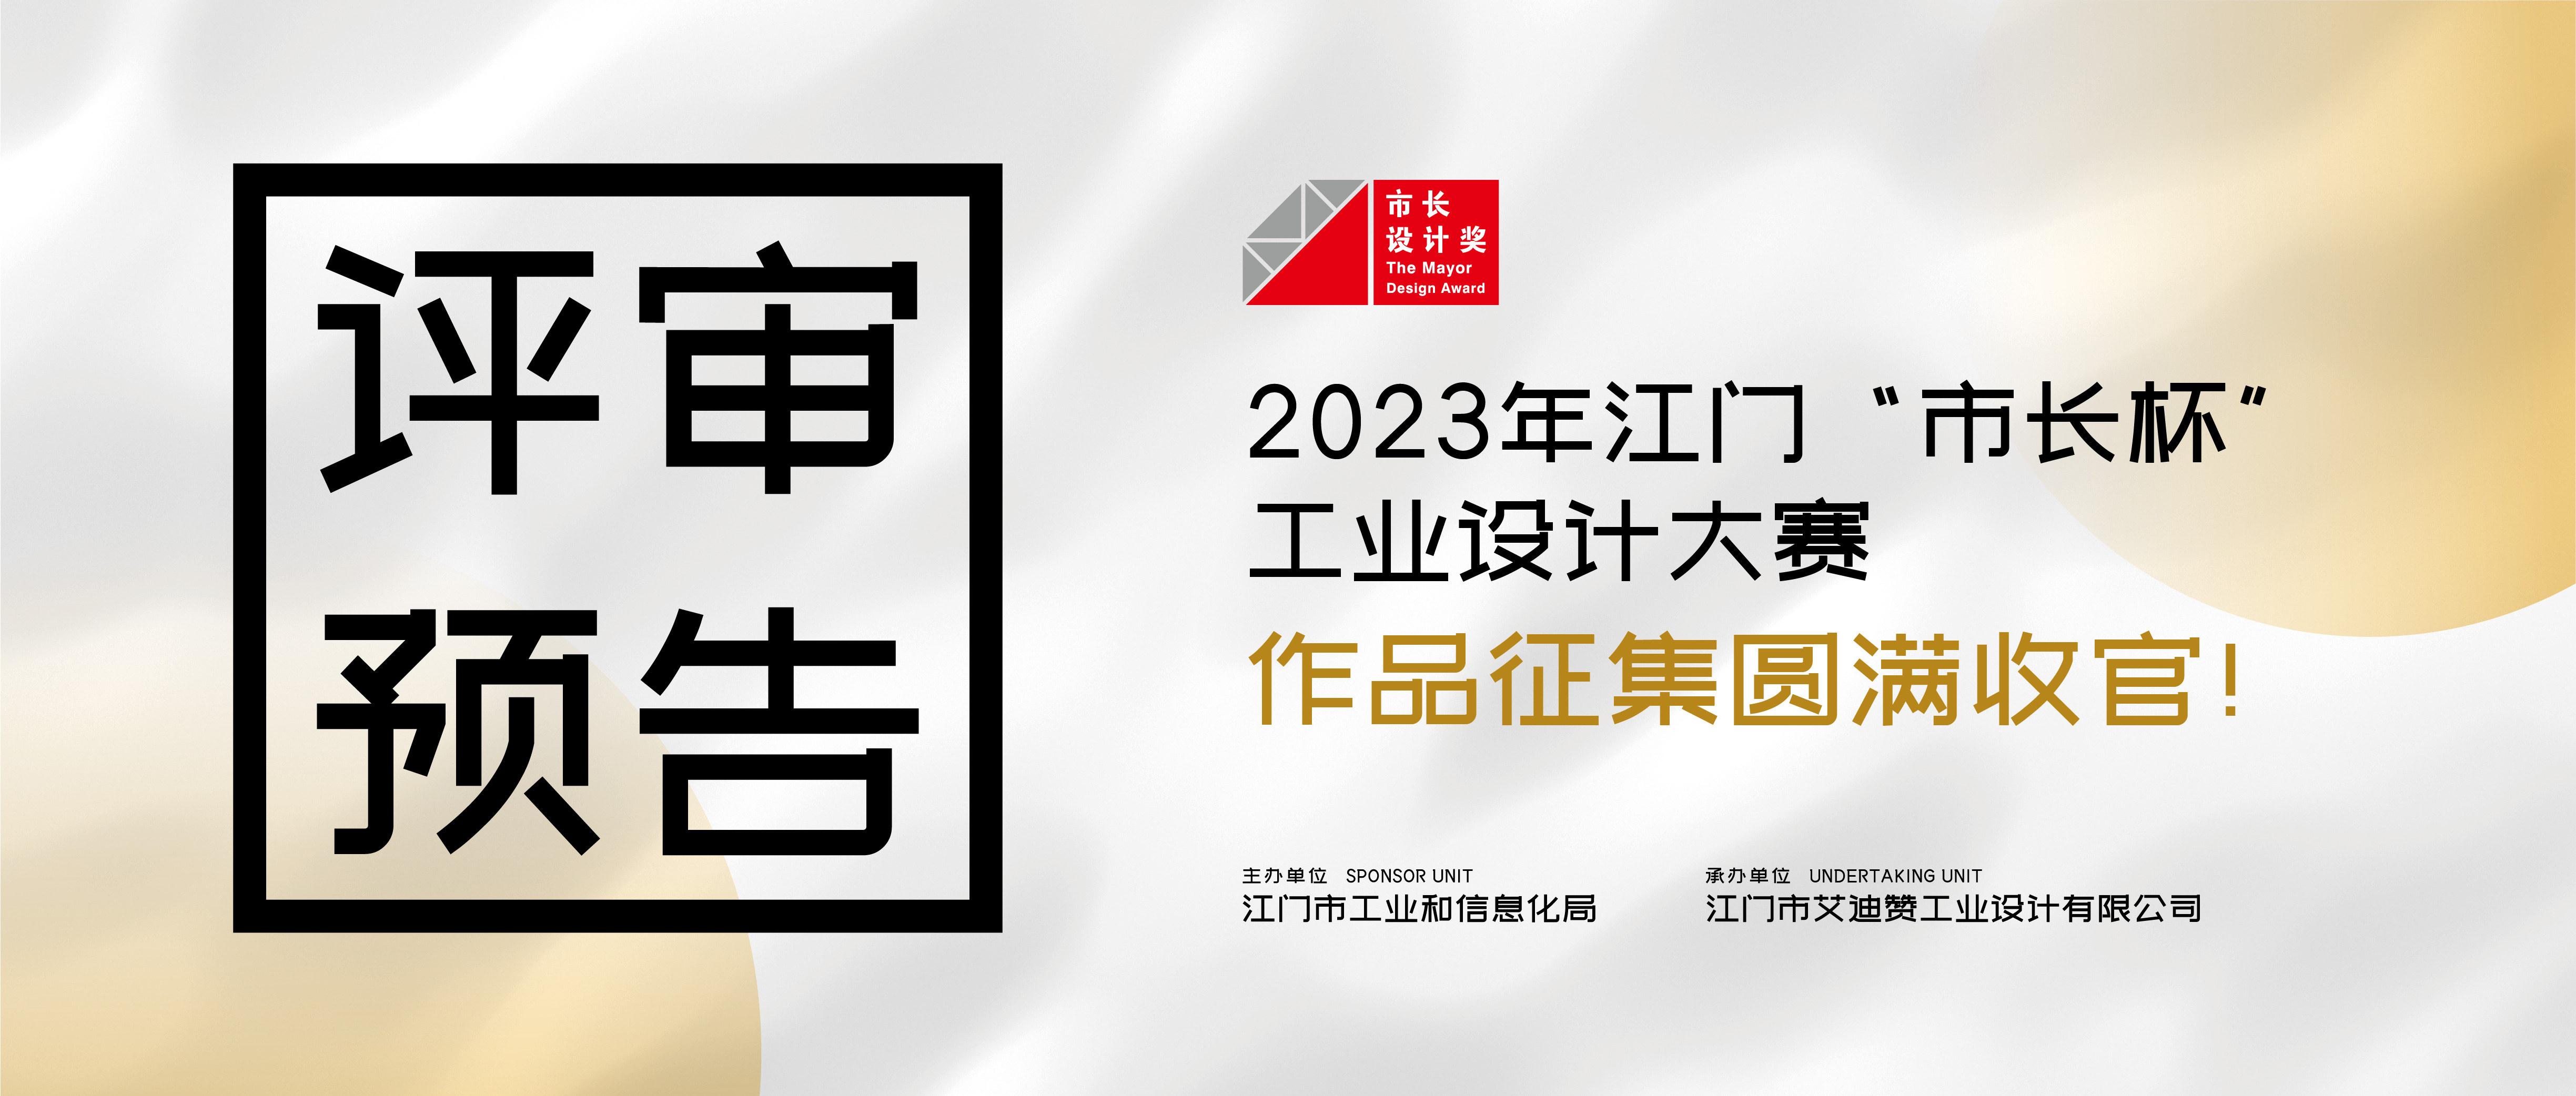 评审预告丨2023年江门“市长杯”工业设计大赛作品征集圆满收官！